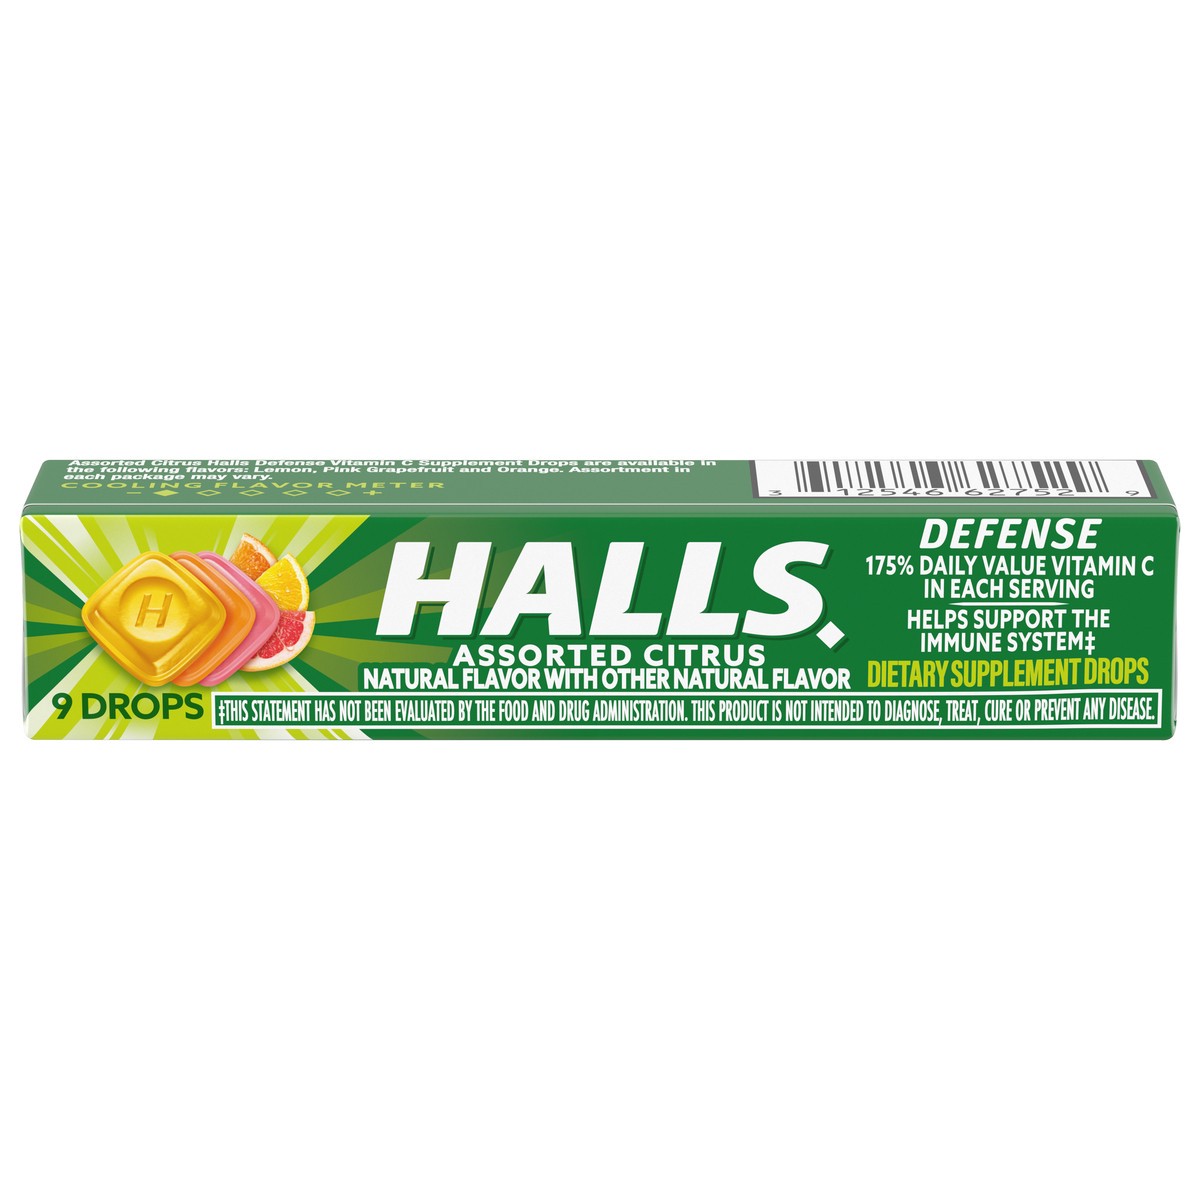 slide 1 of 7, HALLS Defense Assorted Citrus Vitamin C Drops, 9 Drops
, 0.07 lb